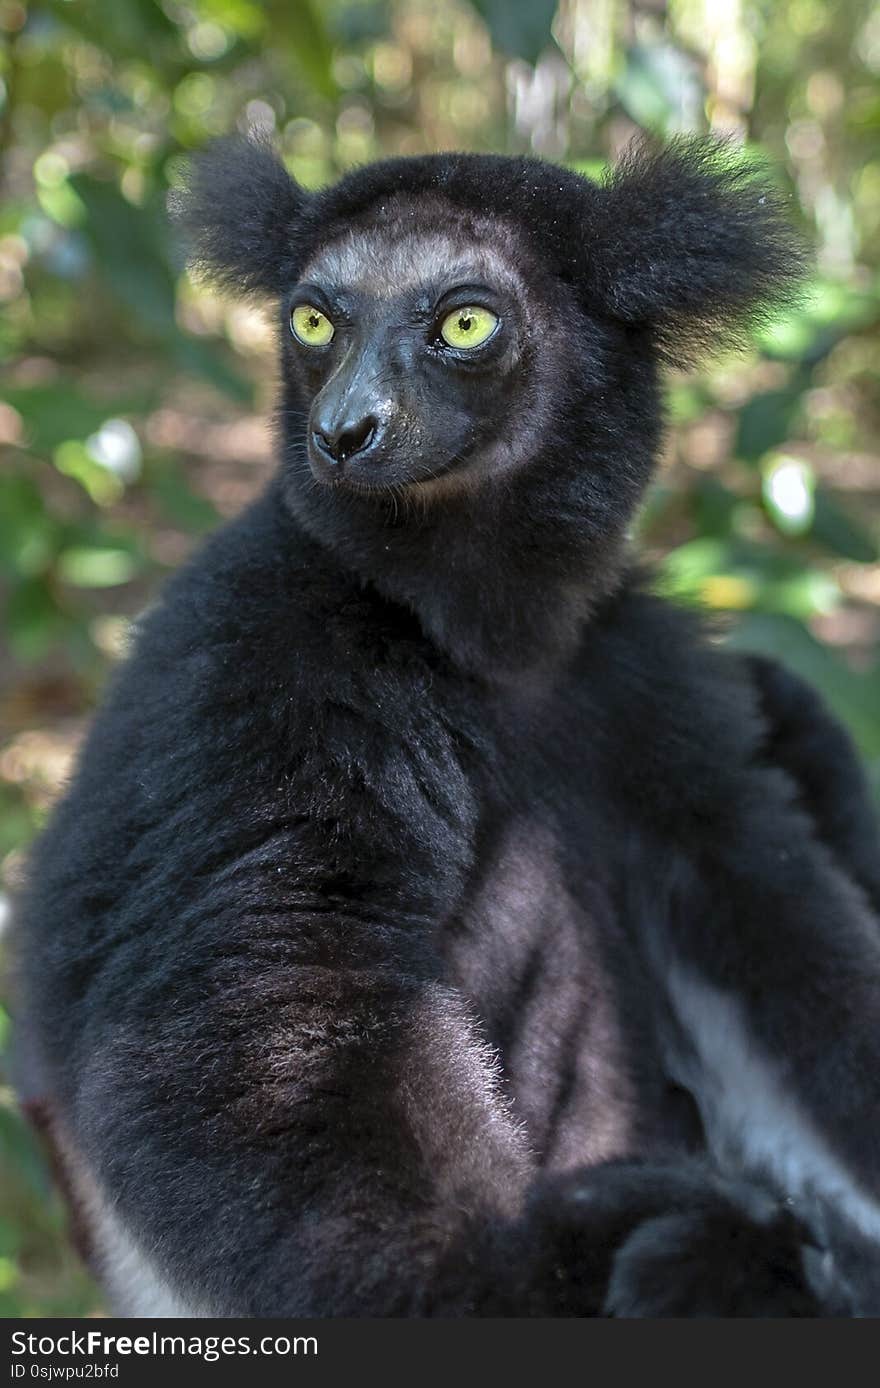 Beautiful image of the Indri lemur - Indri Indri. In wild nature. Portrait.Close up.